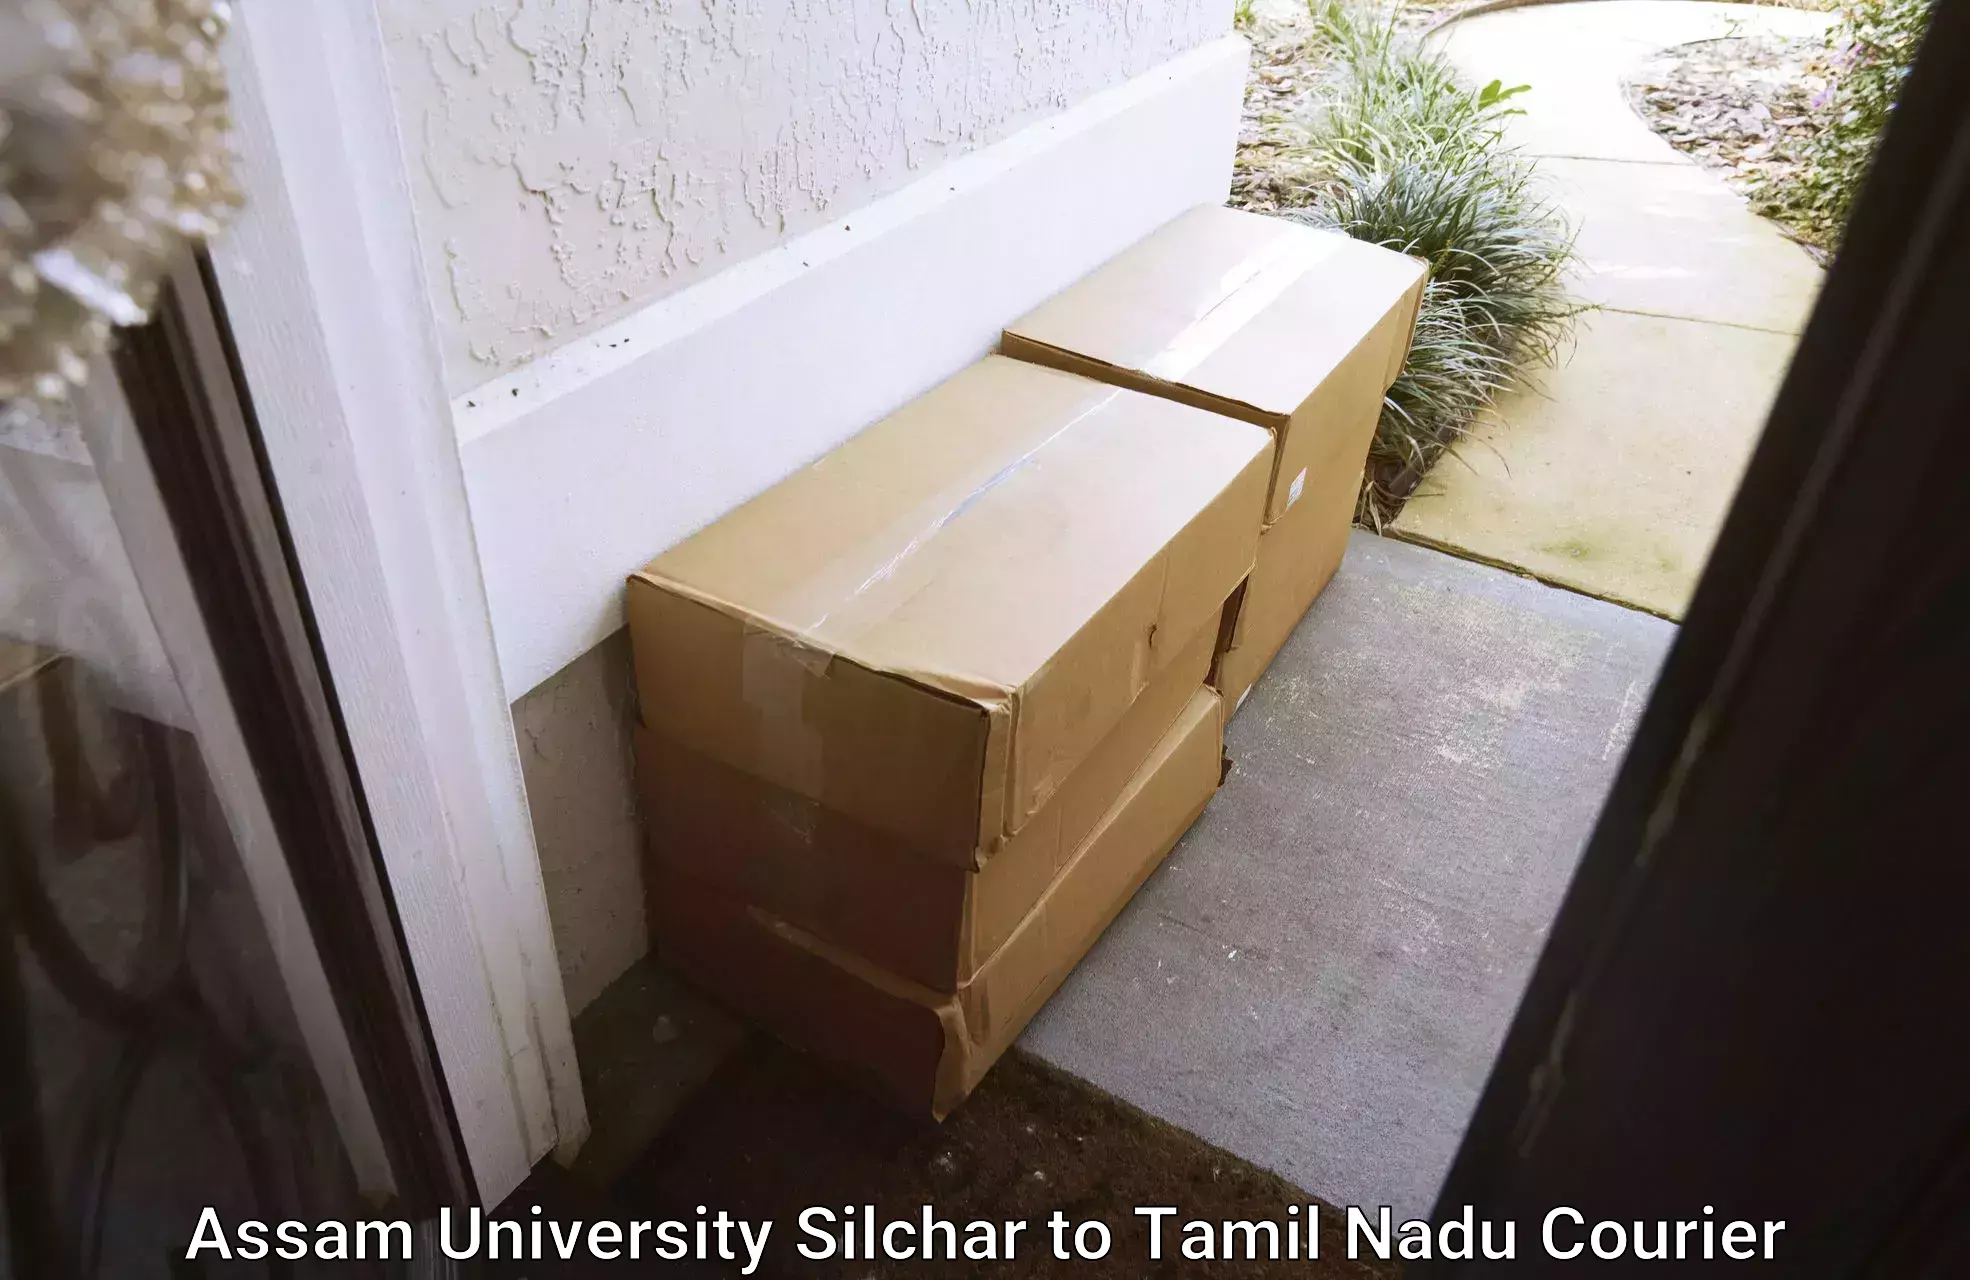 Door-to-door freight service Assam University Silchar to IIT Madras